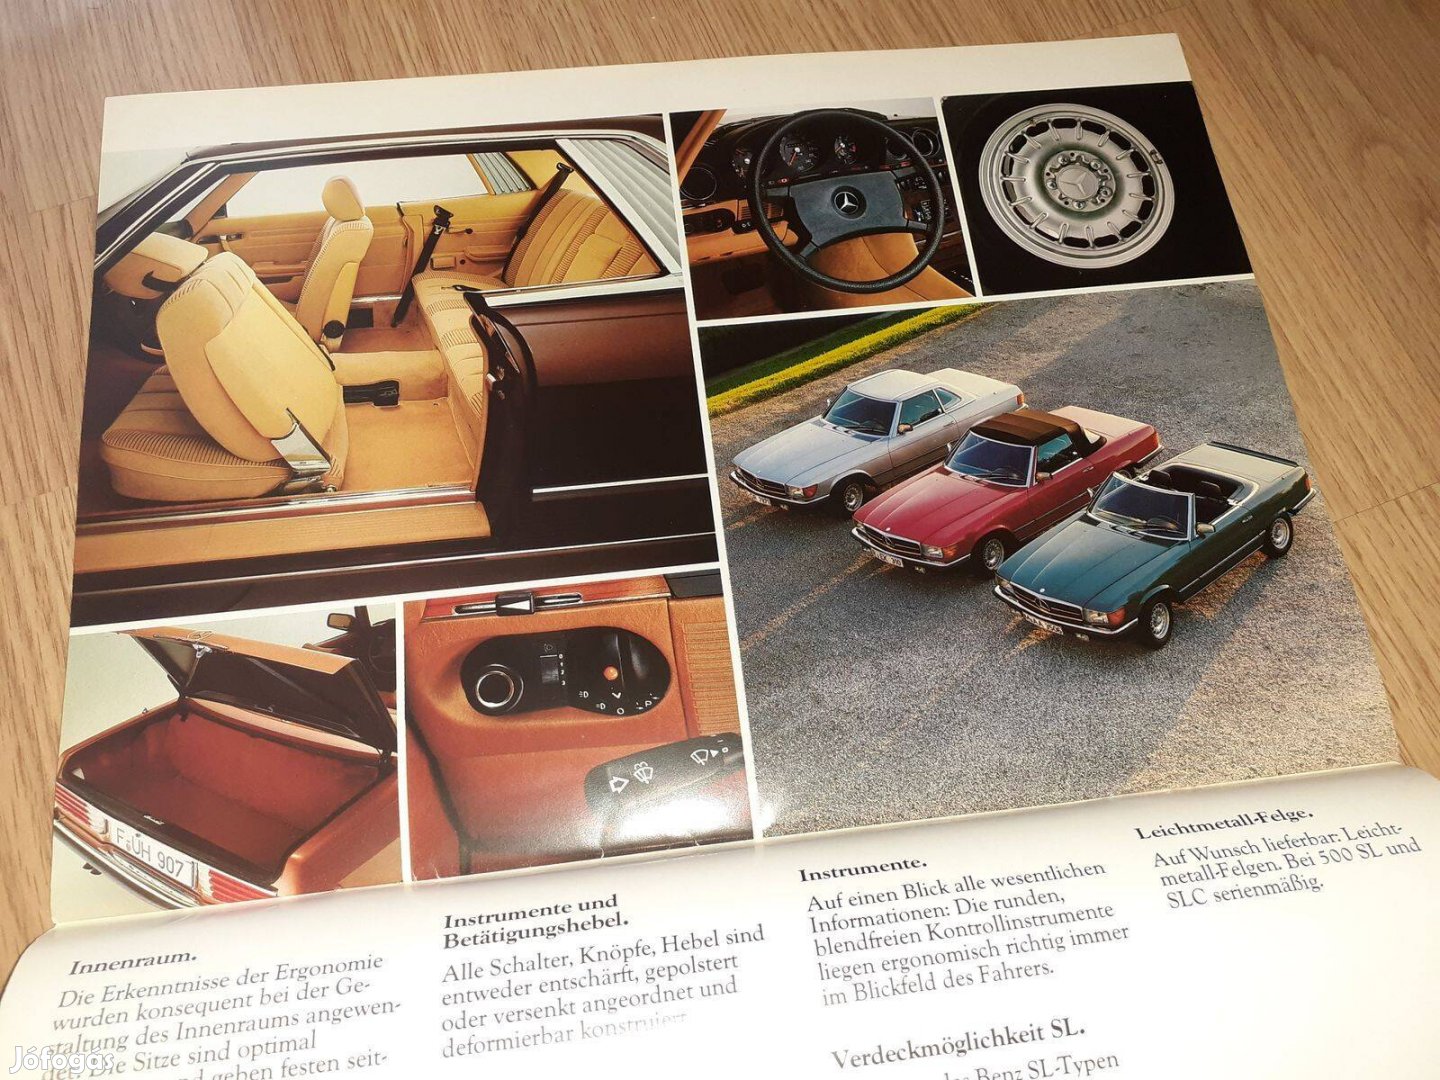 Mercedes Személygépkocsik prospektus - 1981, német nyelvű